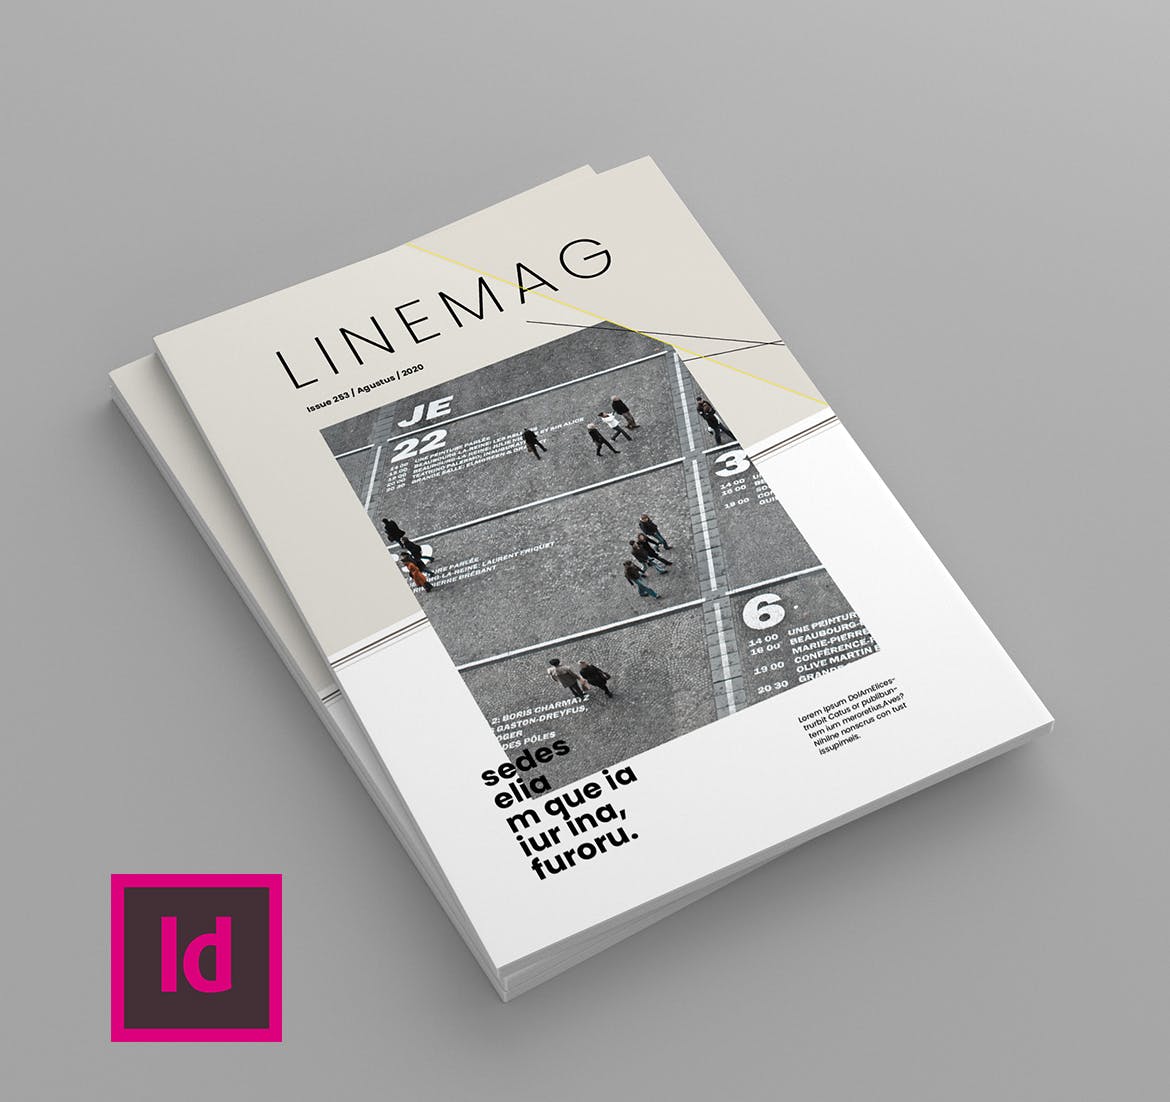 高端企业文化杂志设计模板 Linemag – Magazine Template插图(1)